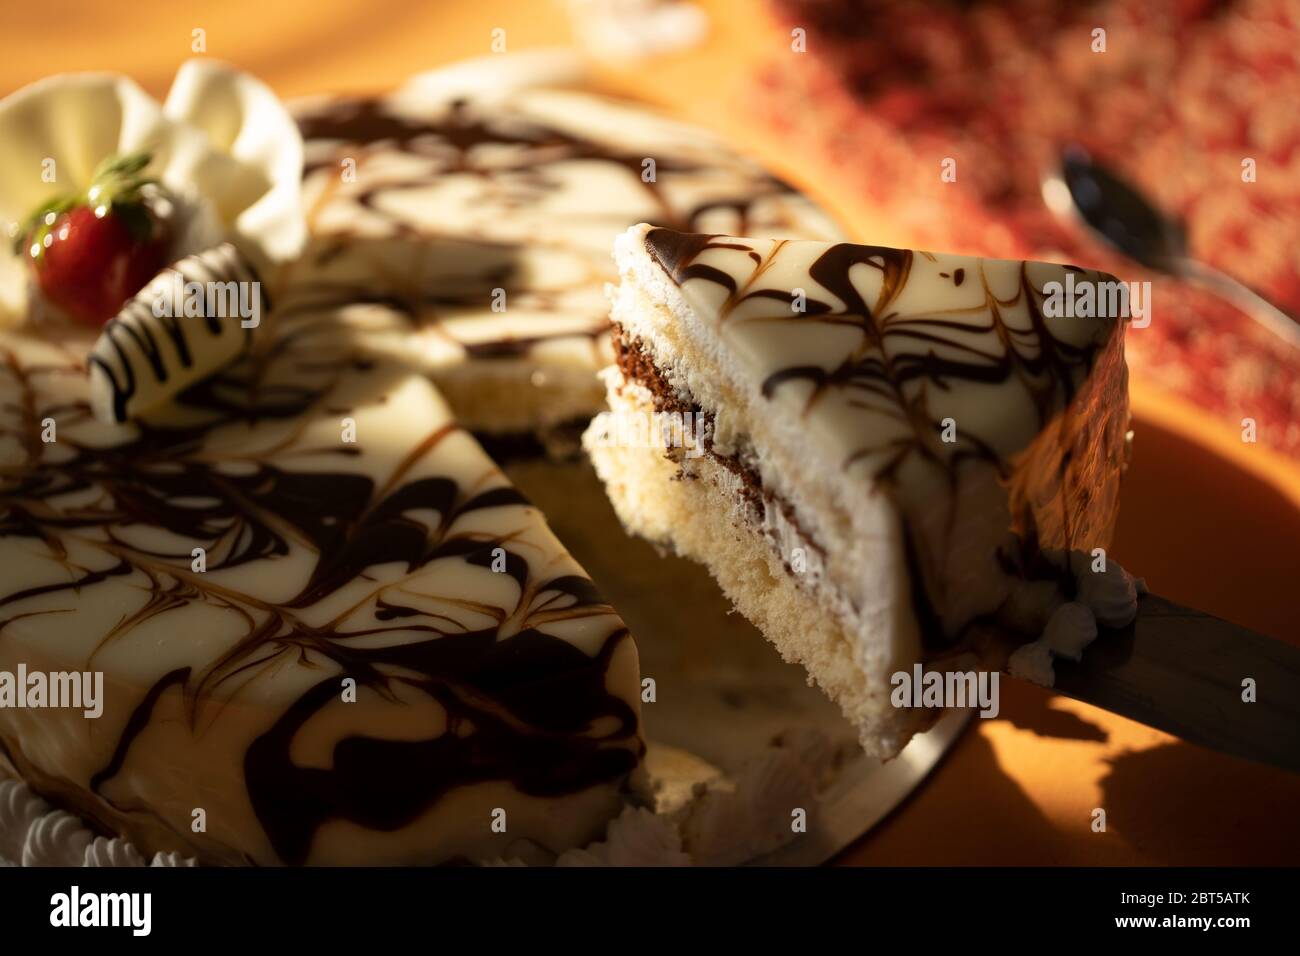 Vanilla and chocolate mix cake Stock Photo